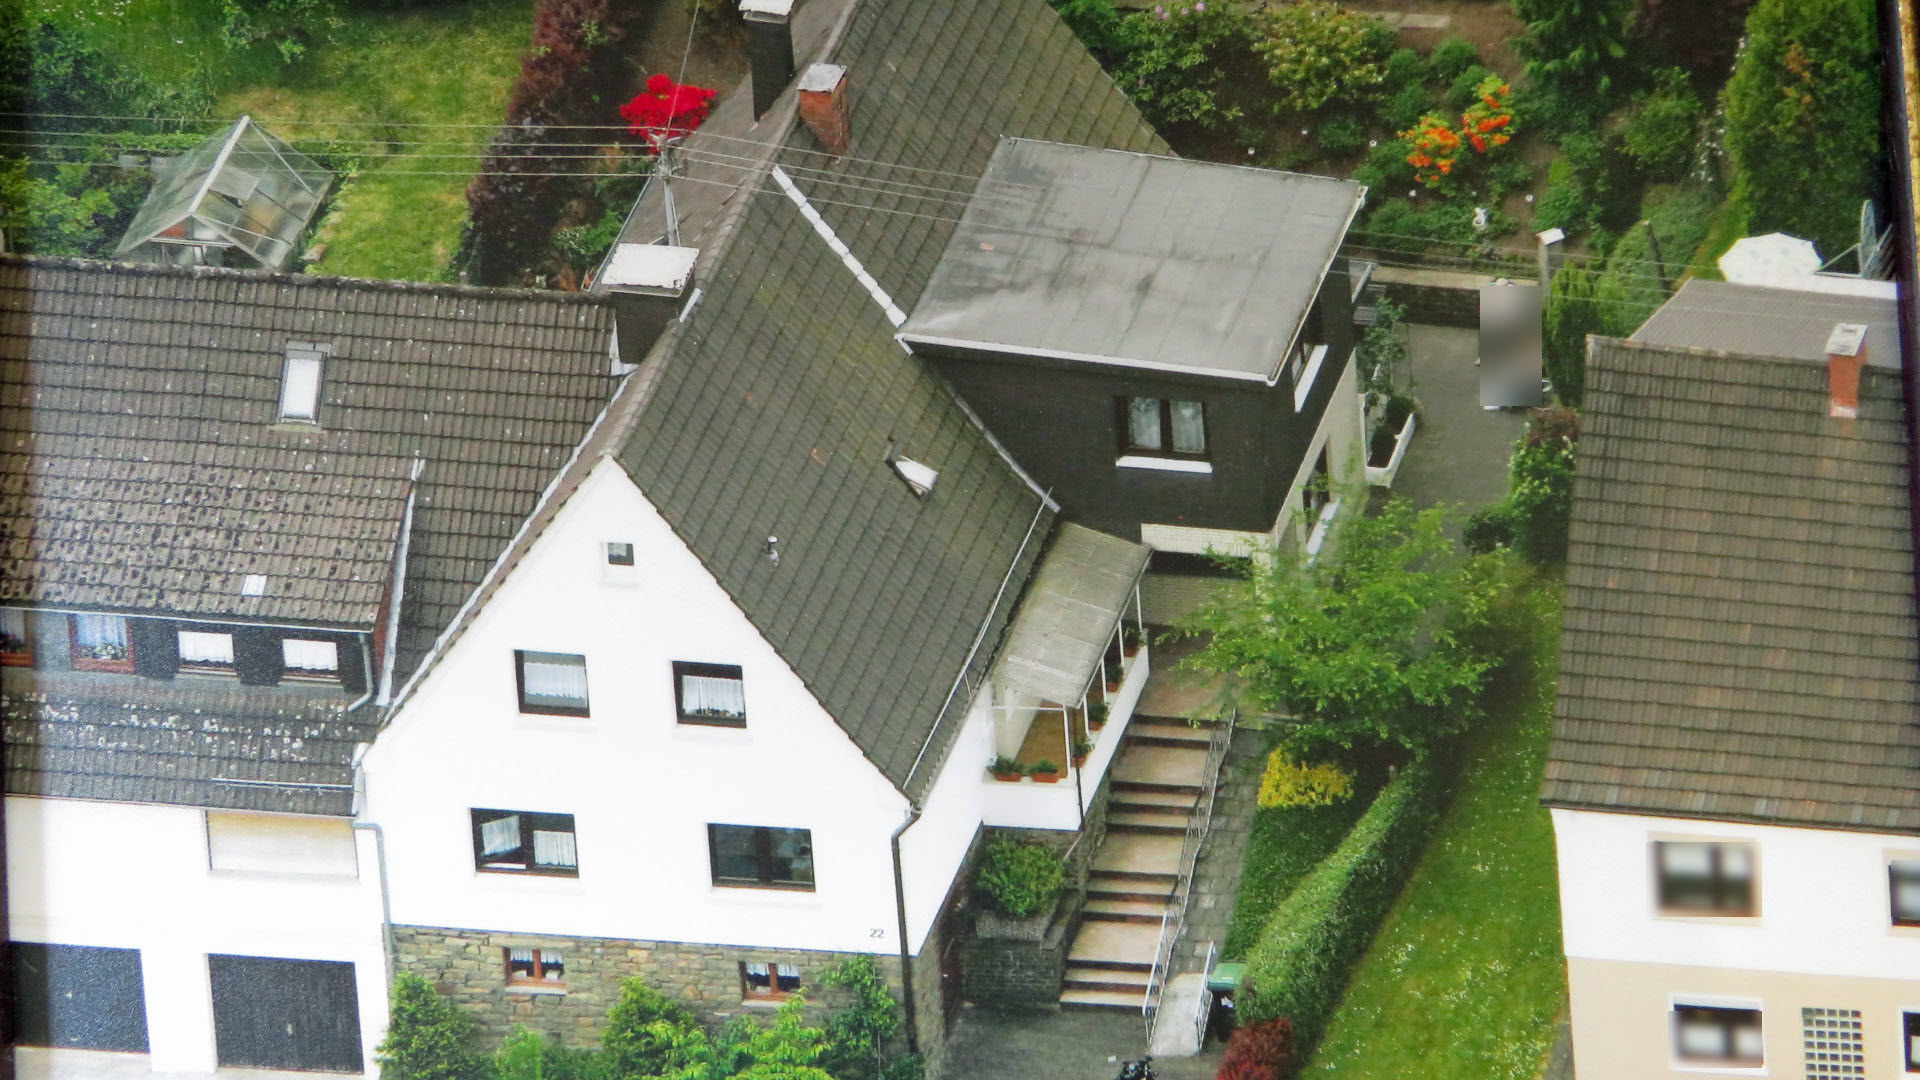 188 2-182 - Morsbach: Massives Hinterhaus mit separatem Eingang und Terrasse